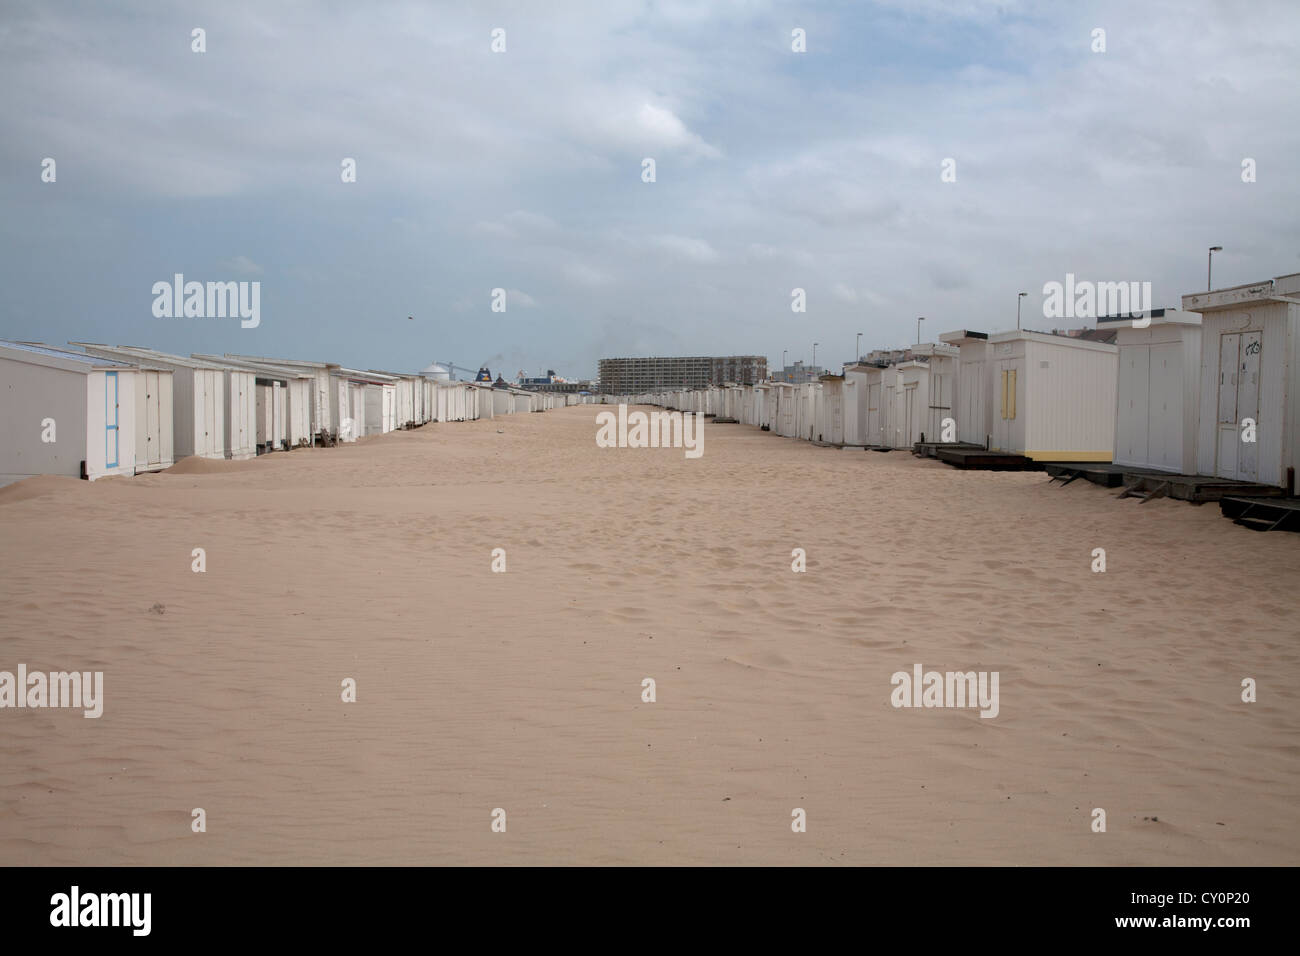 Cabines de plage plage de sable fin de calais cote d'opale pas de calais france Banque D'Images